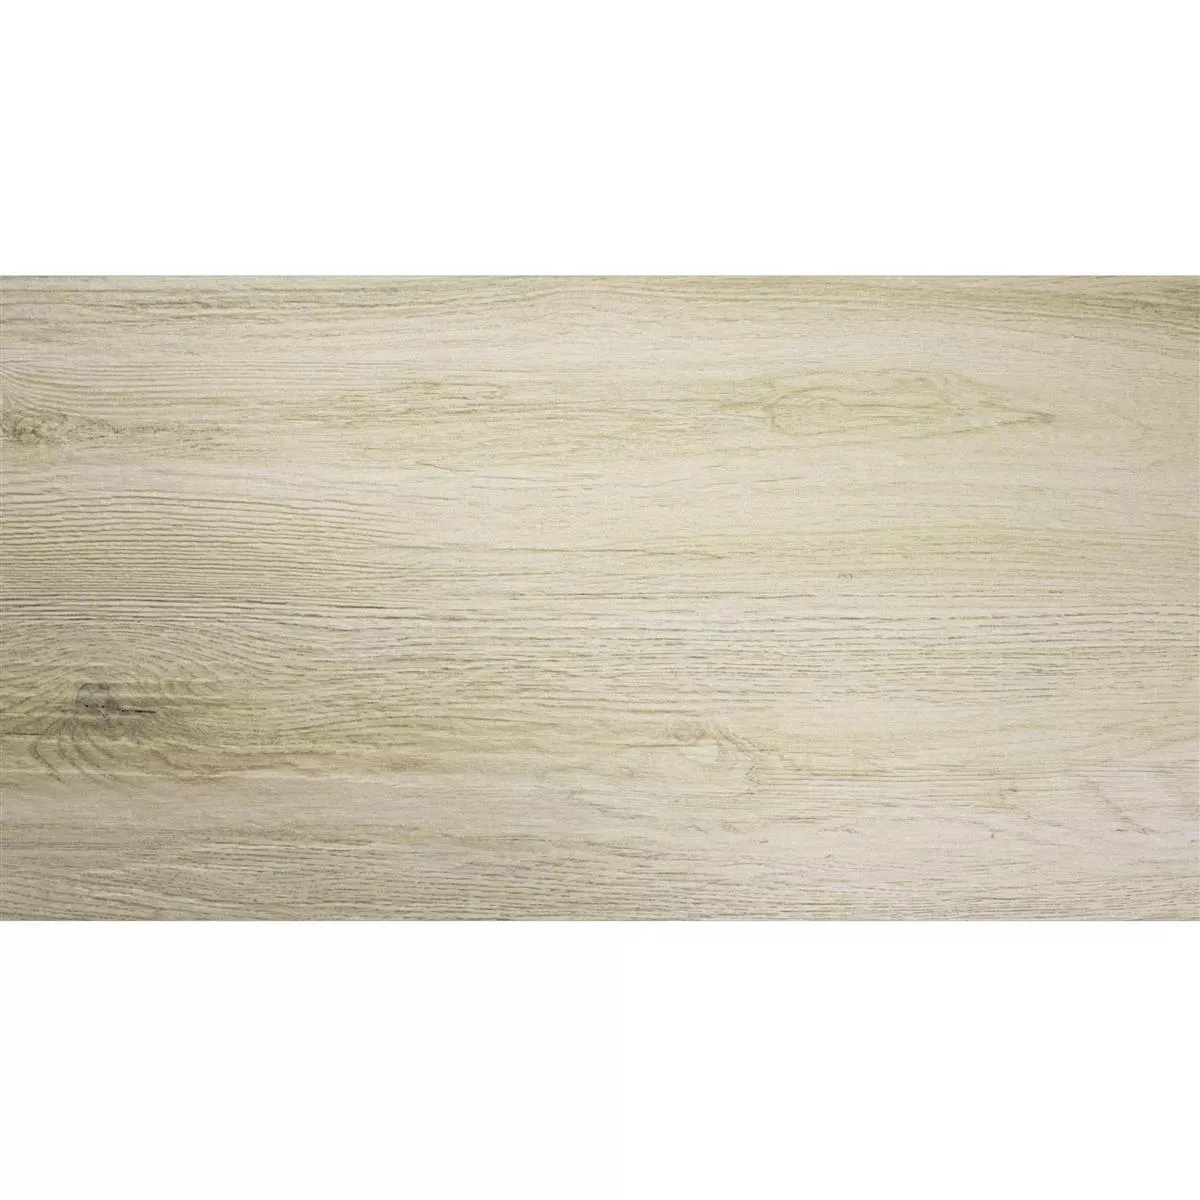 Próbka Płytki Podłogowe Wygląd Drewna Alexandria Beżowy 30x60cm